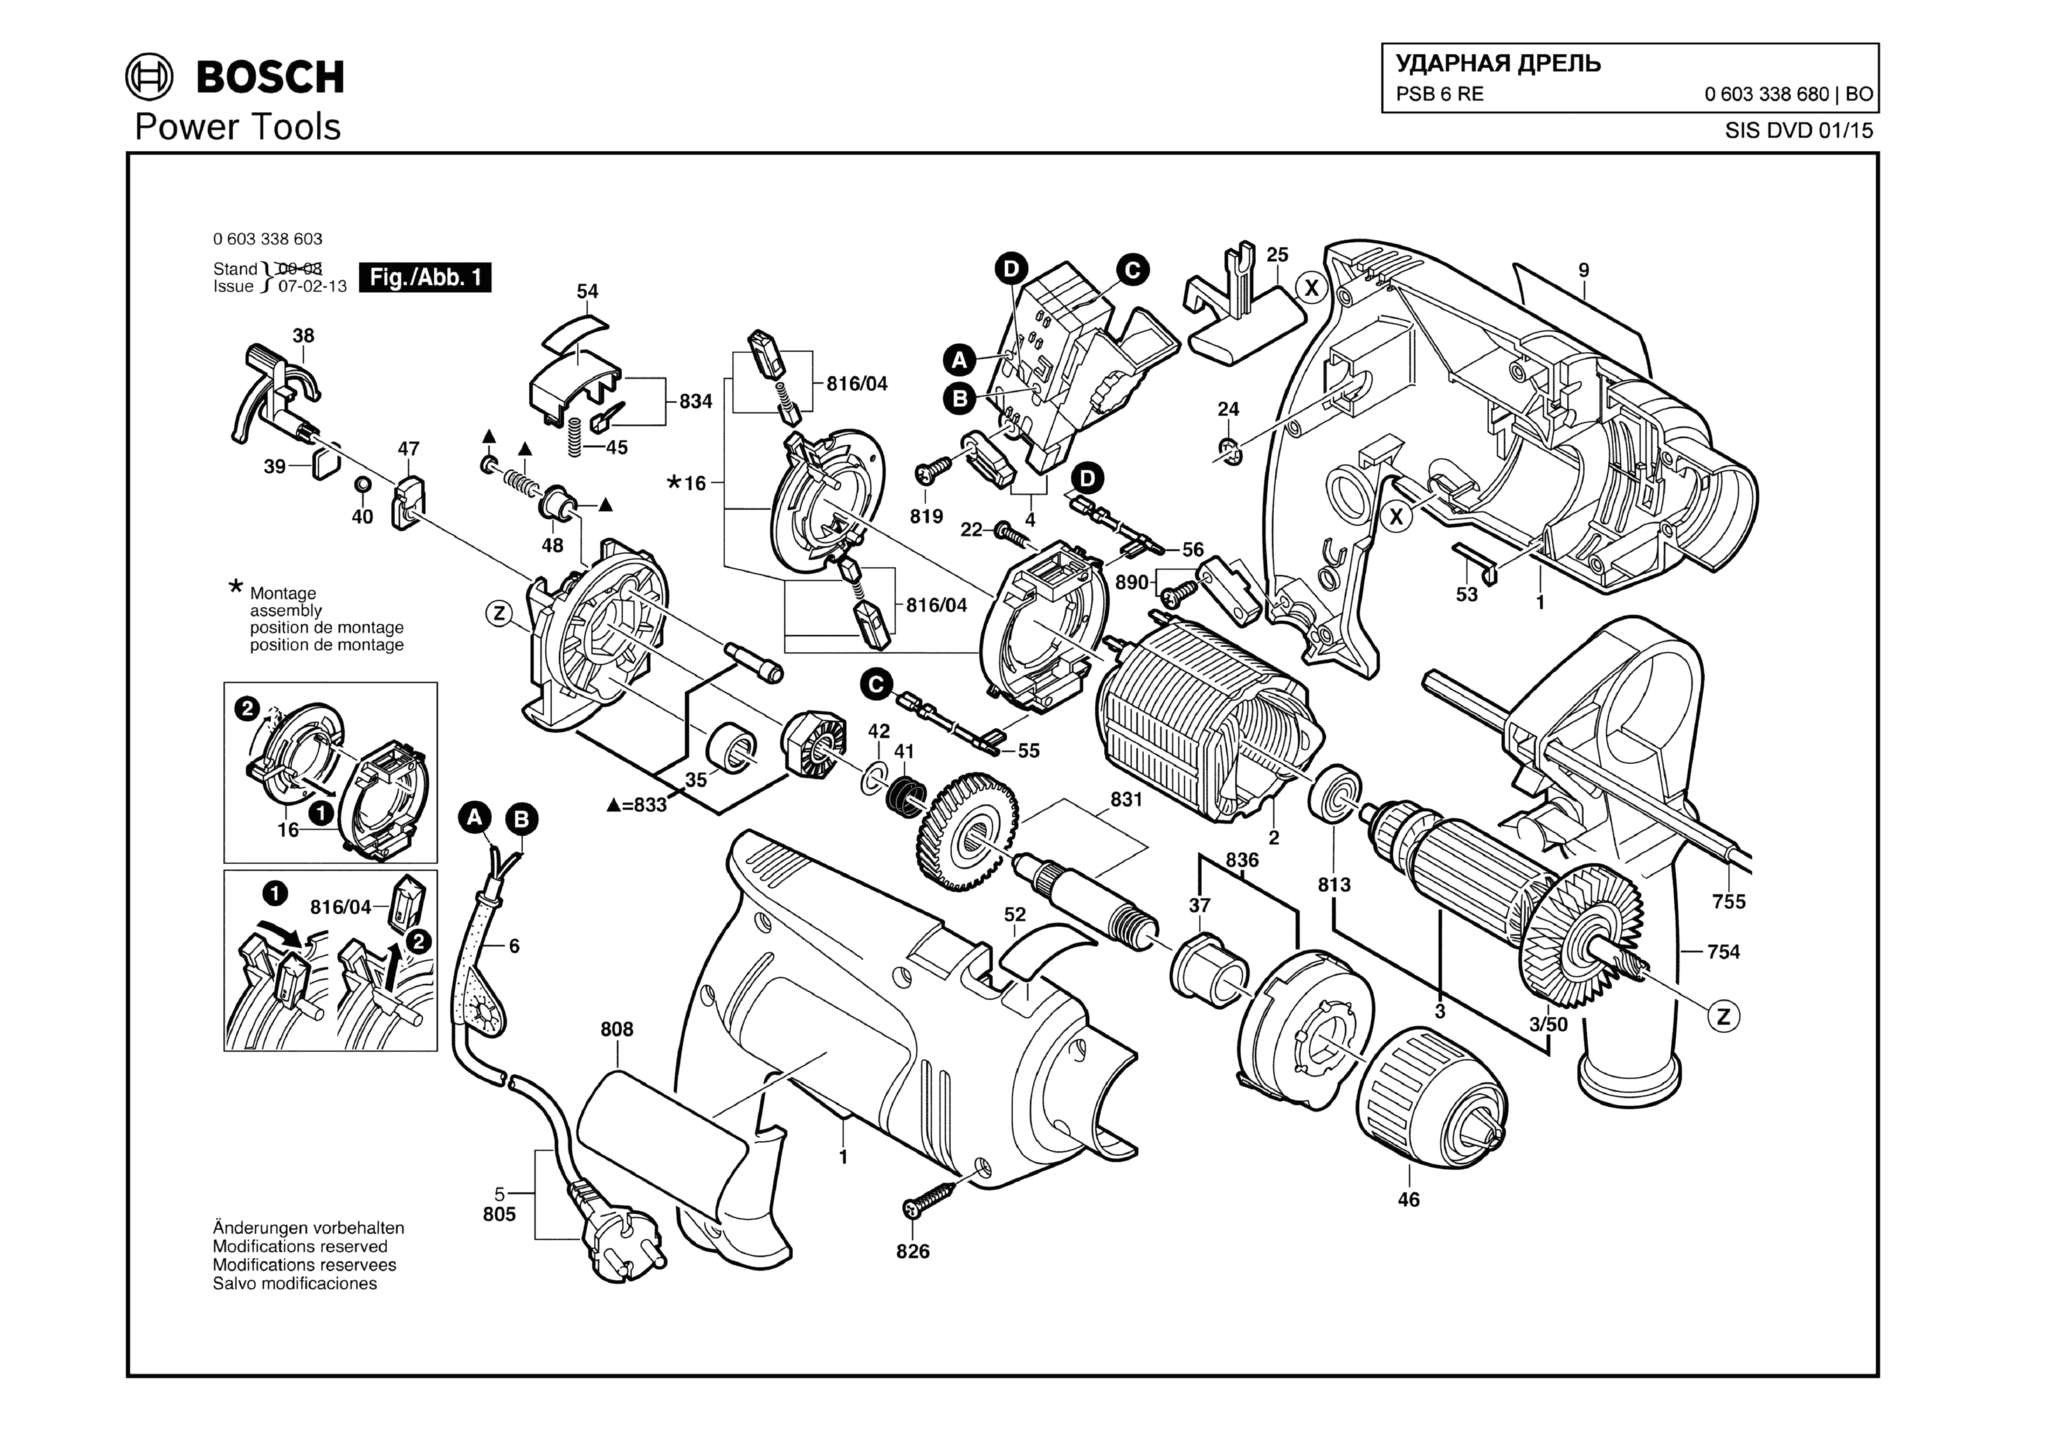 Запчасти, схема и деталировка Bosch PSB 6 RE (ТИП 0603338680)